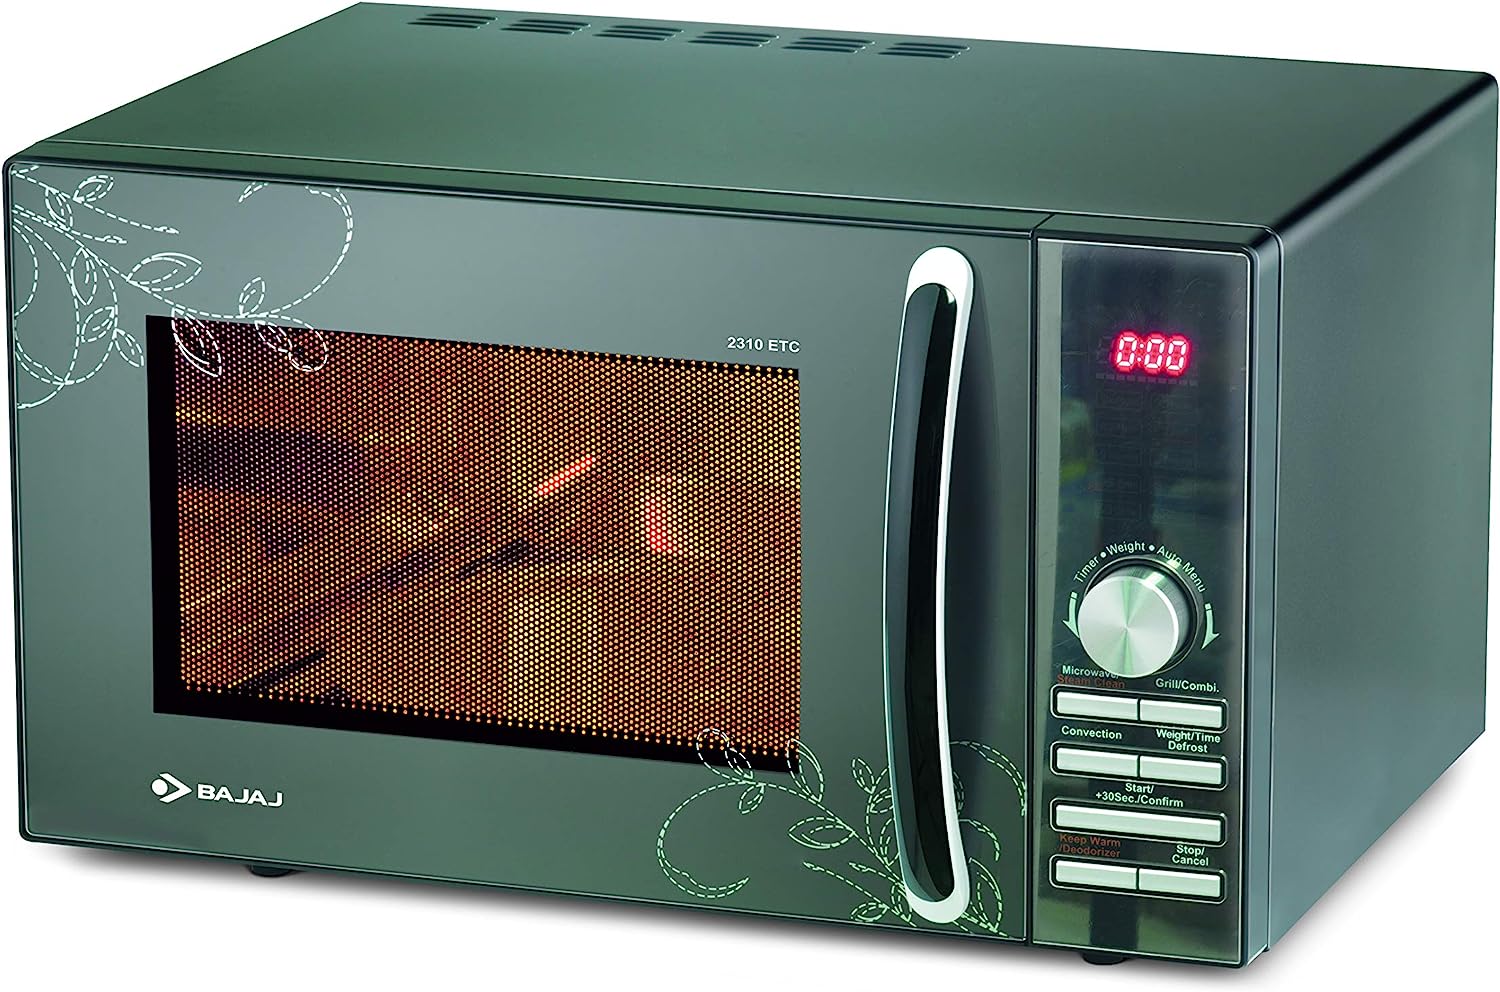 Bajaj 23 L Convection Microwave Oven (2310 ETC) (Silver)